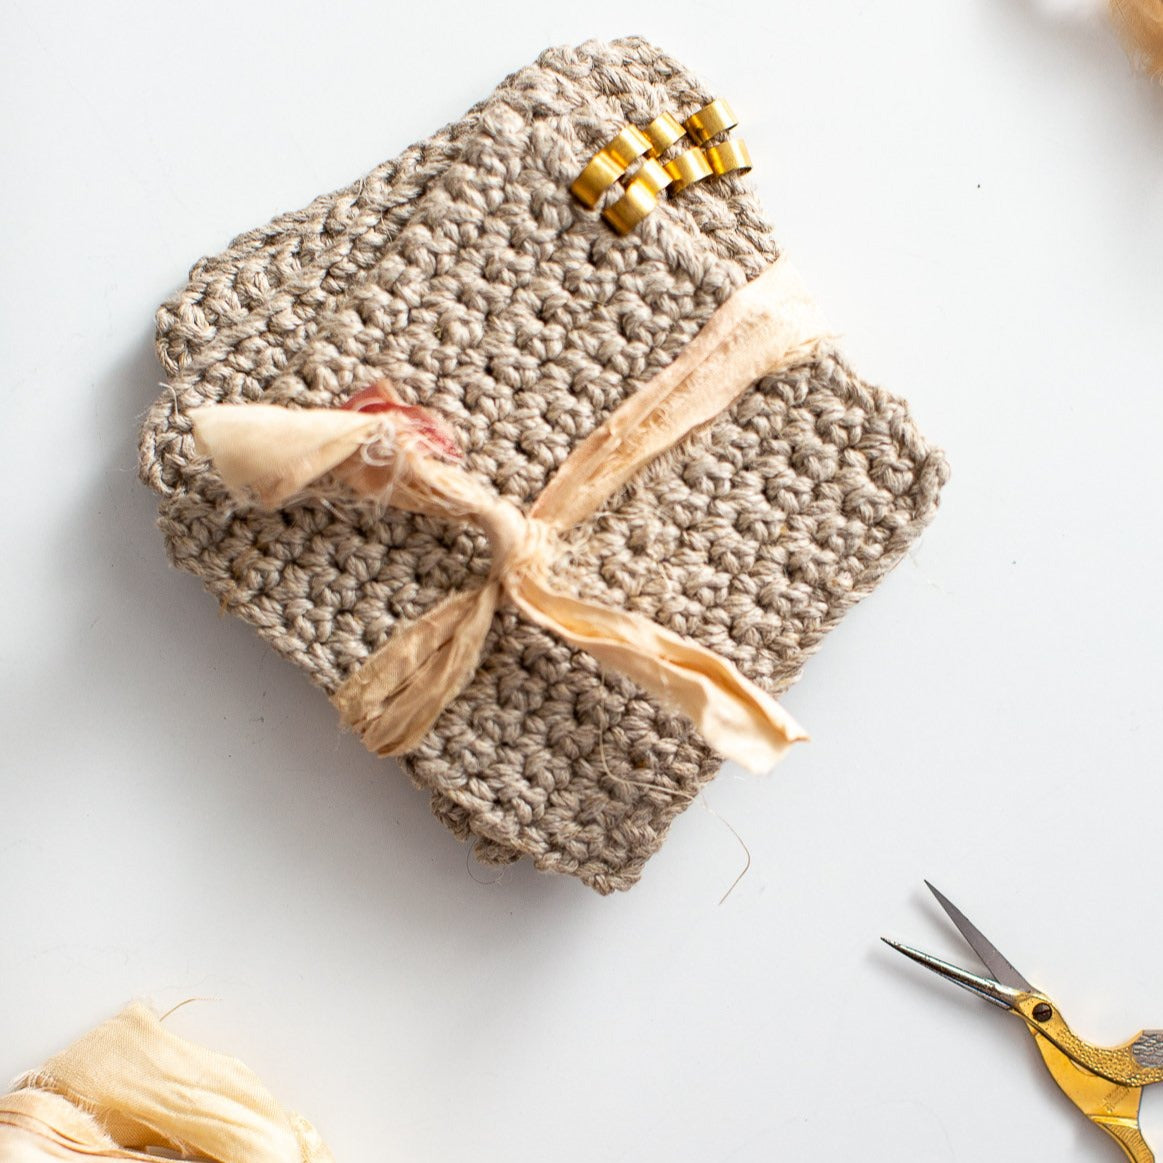 Summer Dream Blanket 4.0 Crochet Kit 2 Gold & Jade Gravel